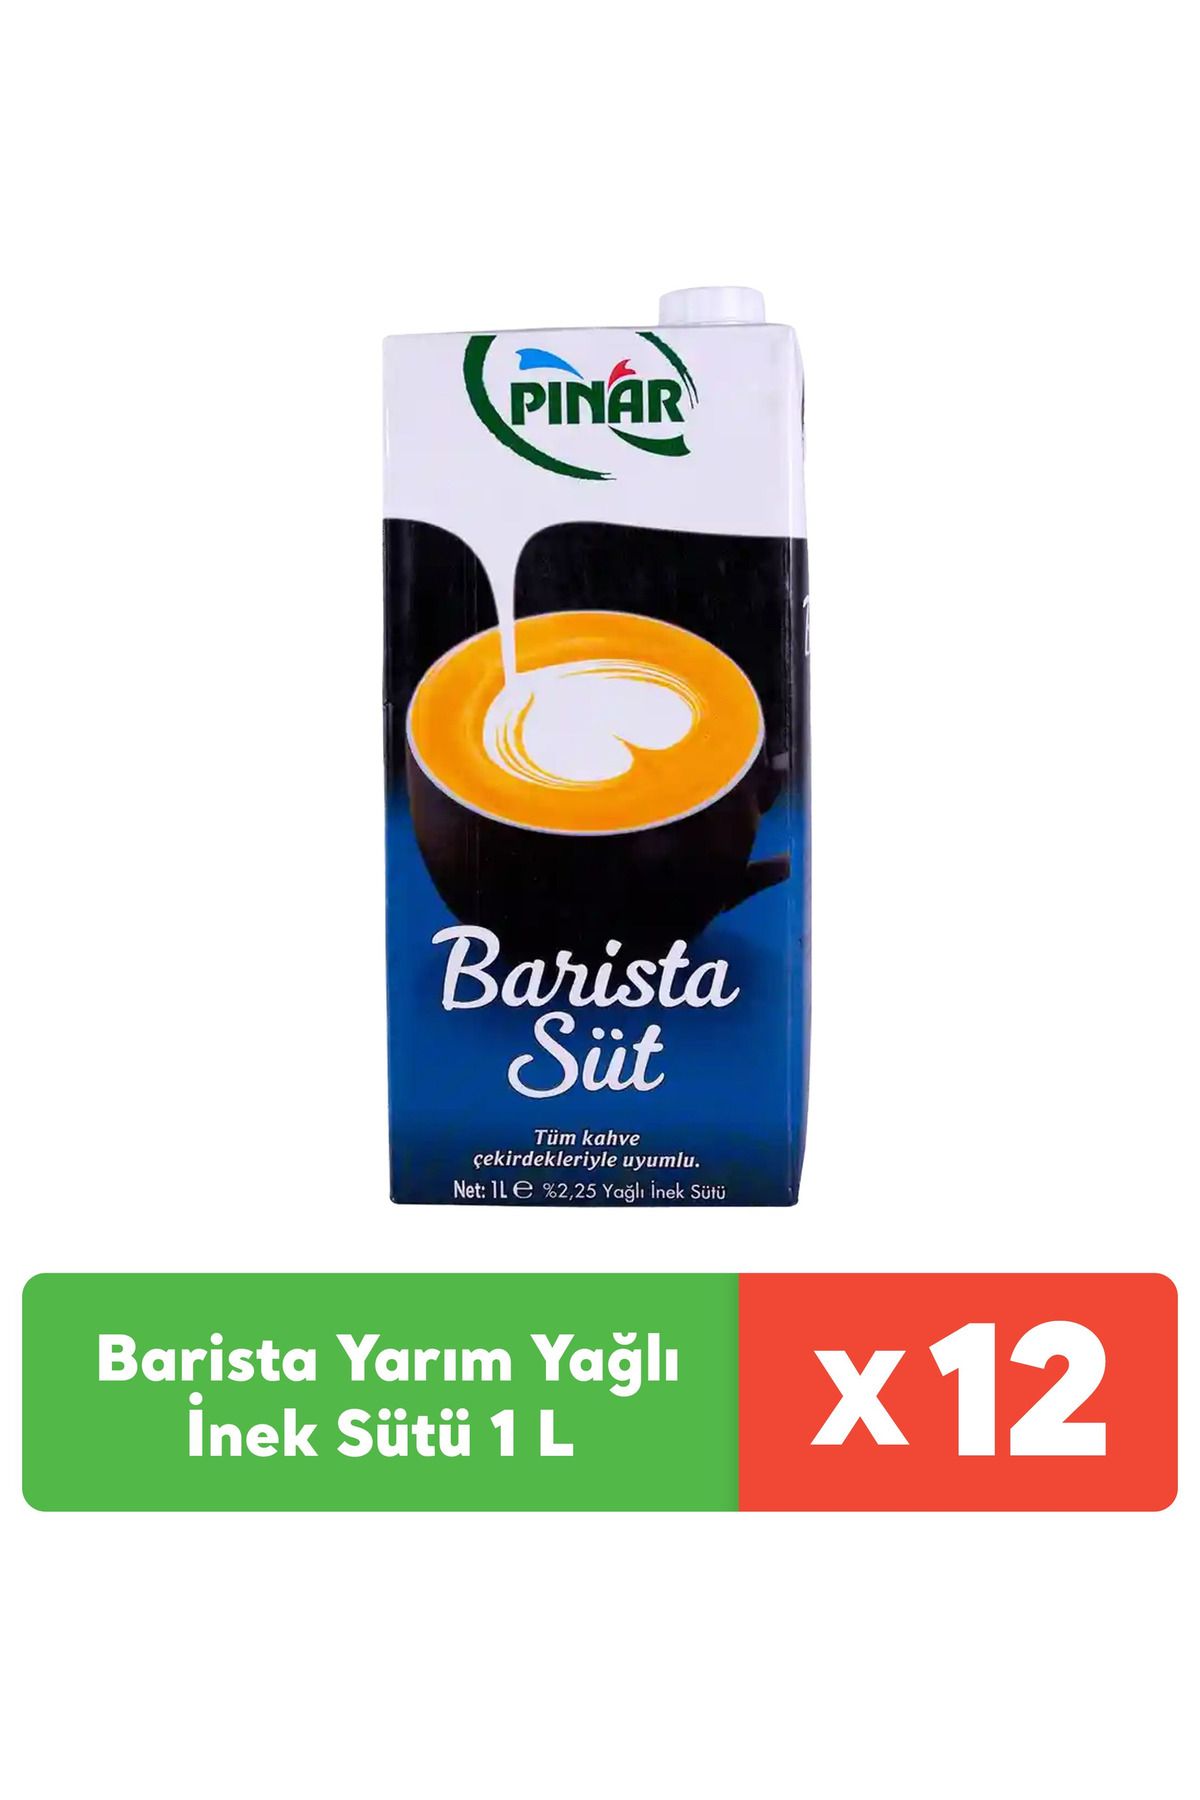 Pınar Barista Yarım Yağlı Inek Sütü 1 L X 12 Adet